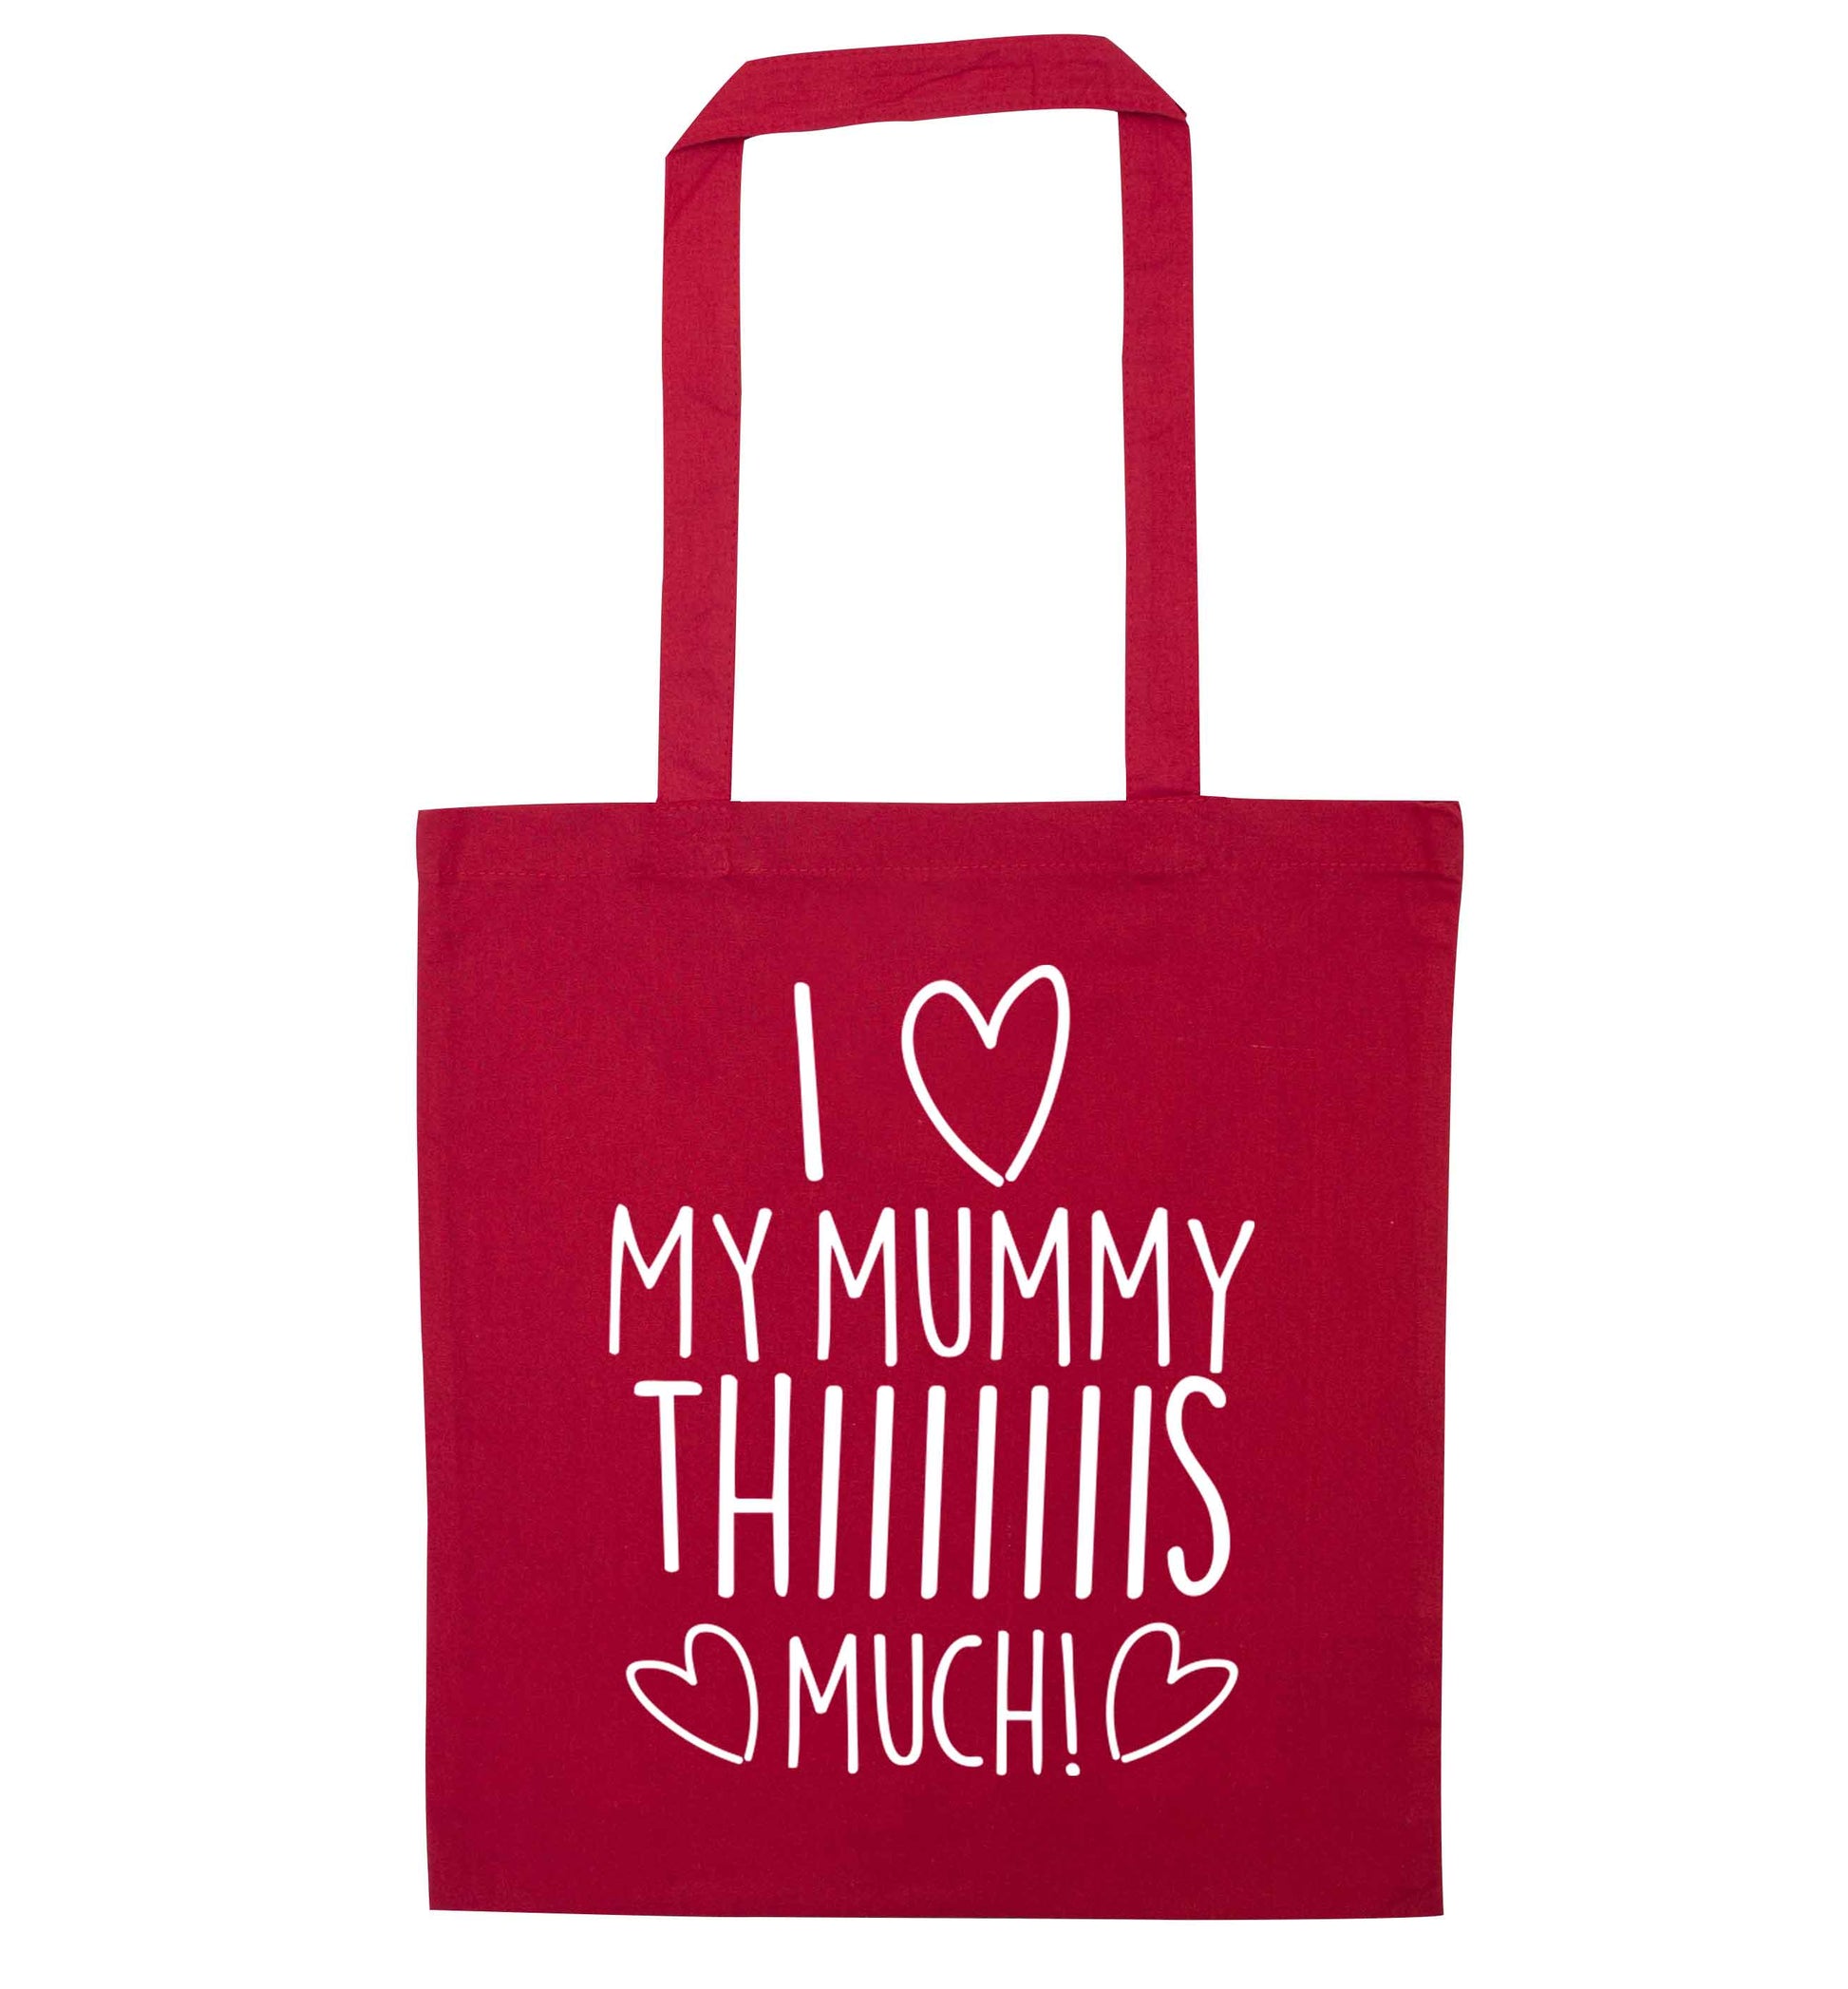 I love my mummy thiiiiis much! red tote bag